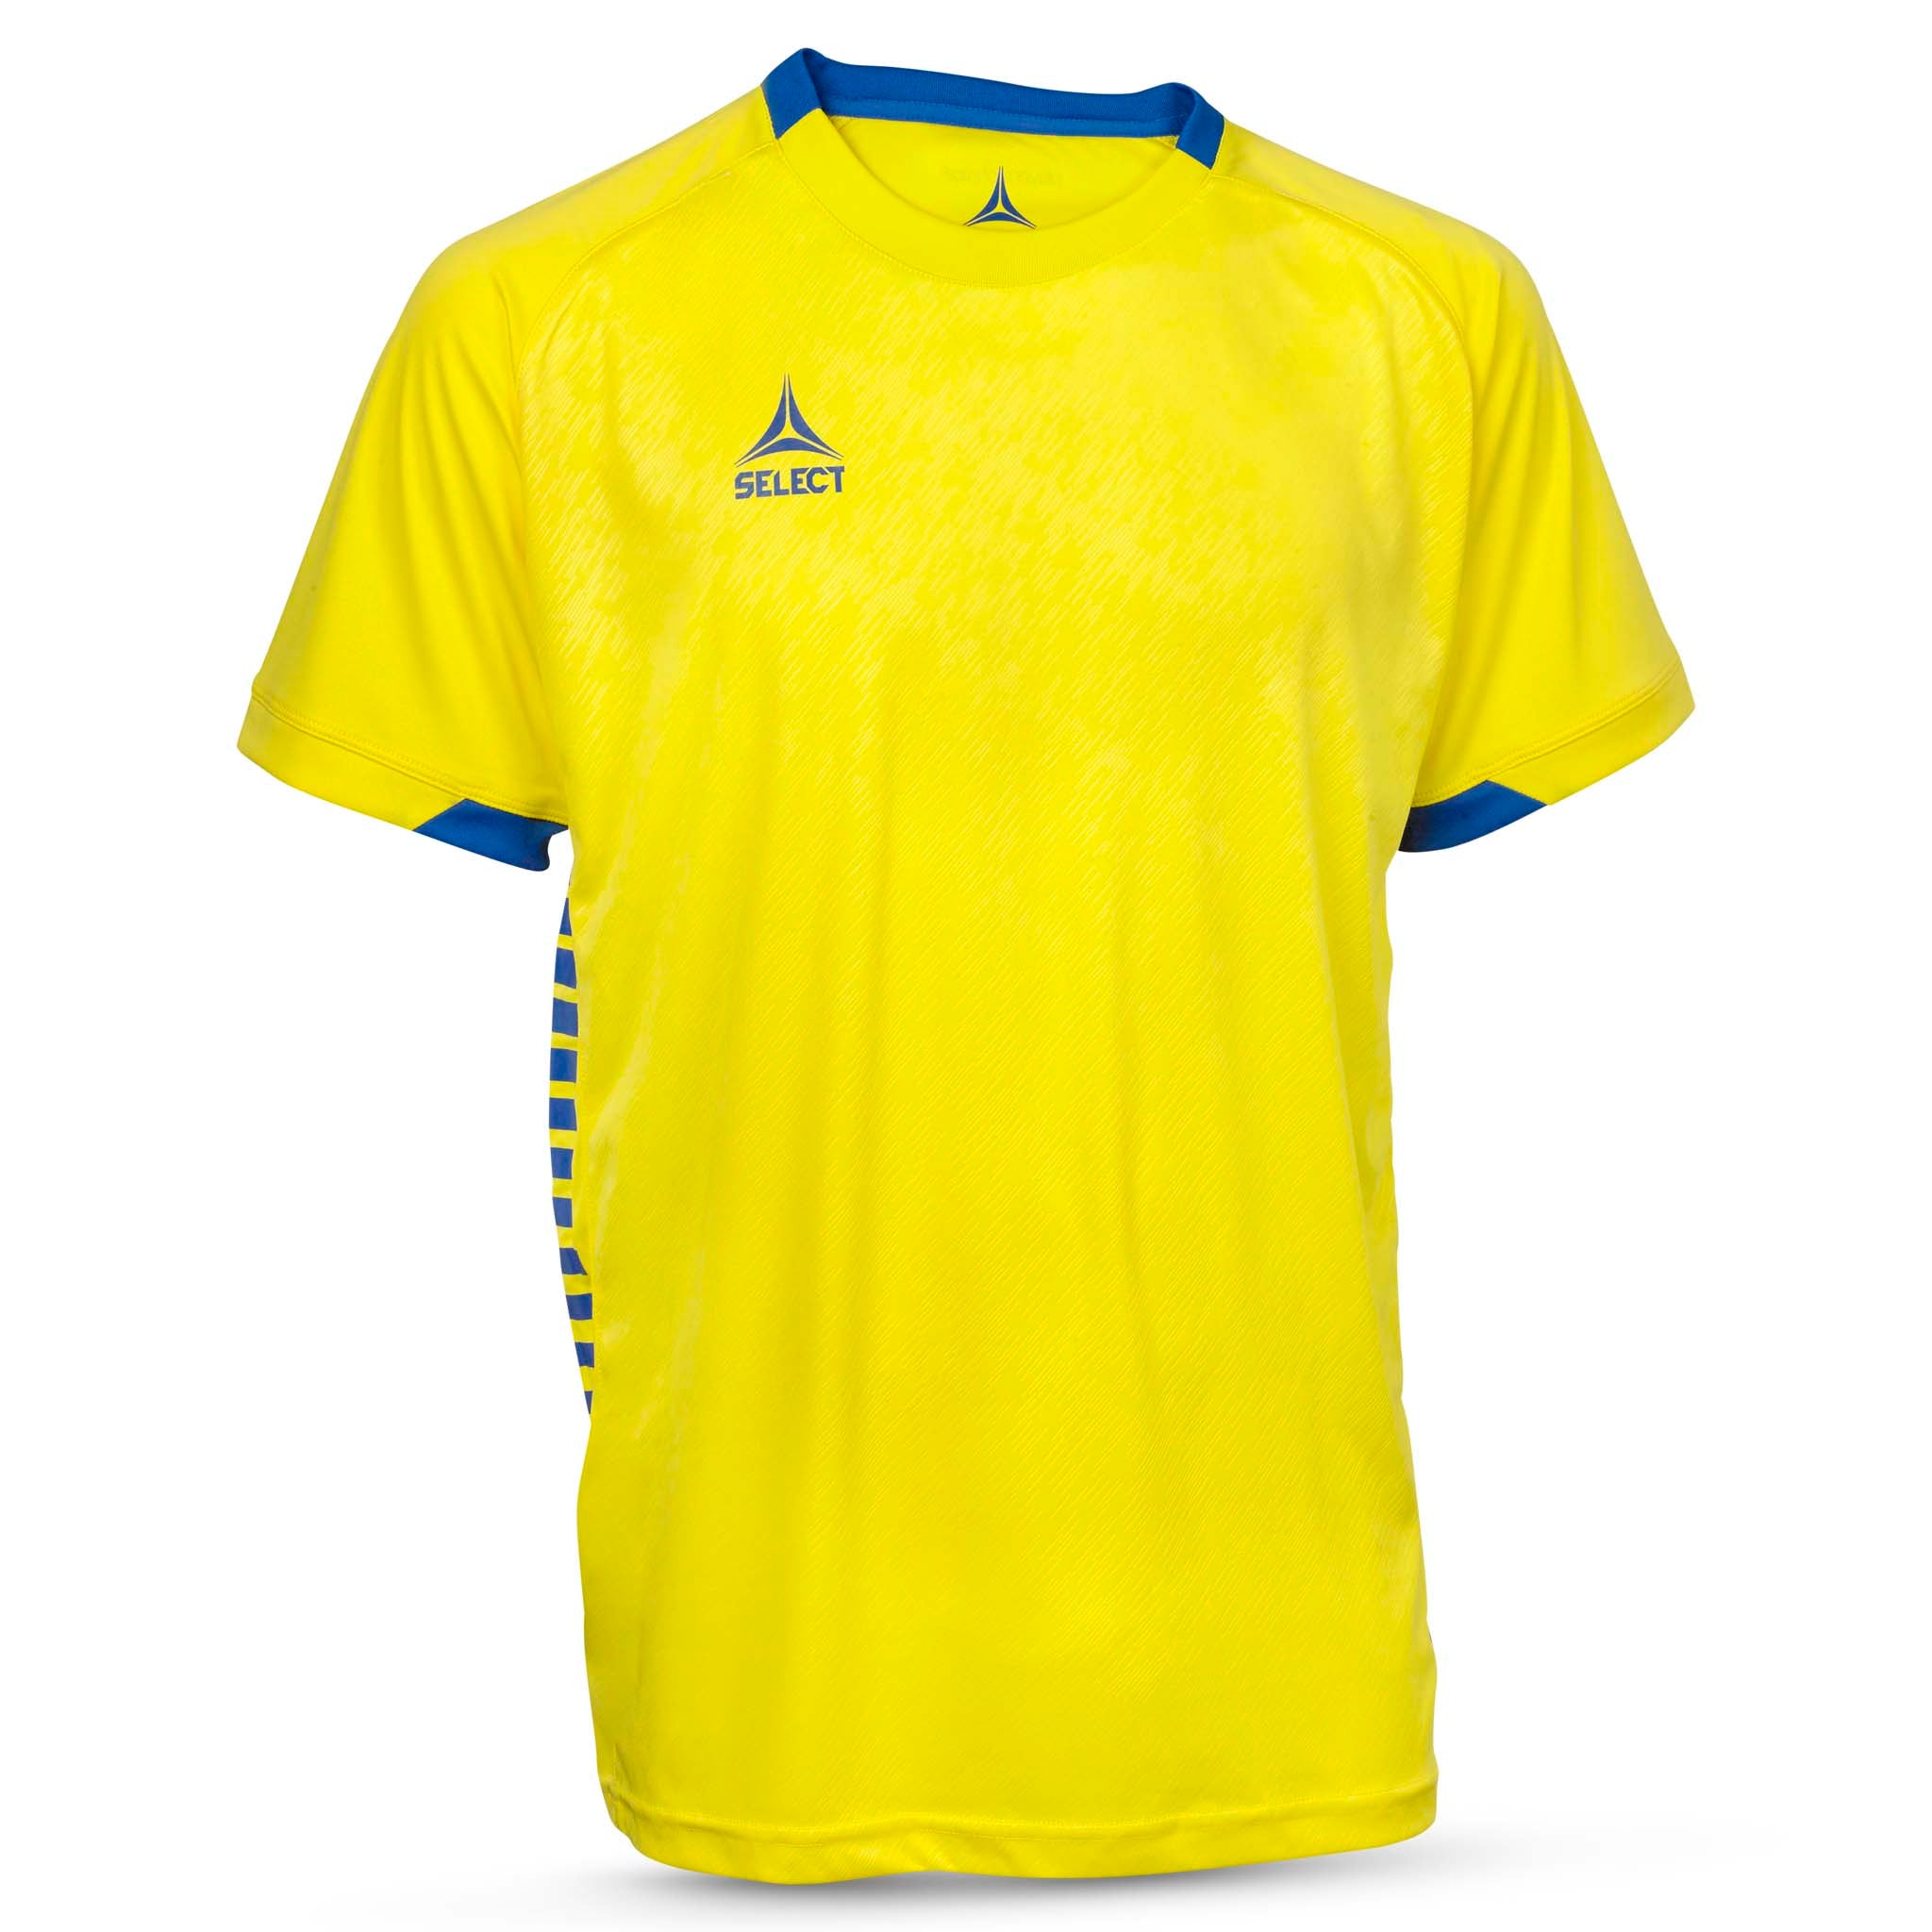 Spain Kortærmet spillertrøje #farve_gul/blå